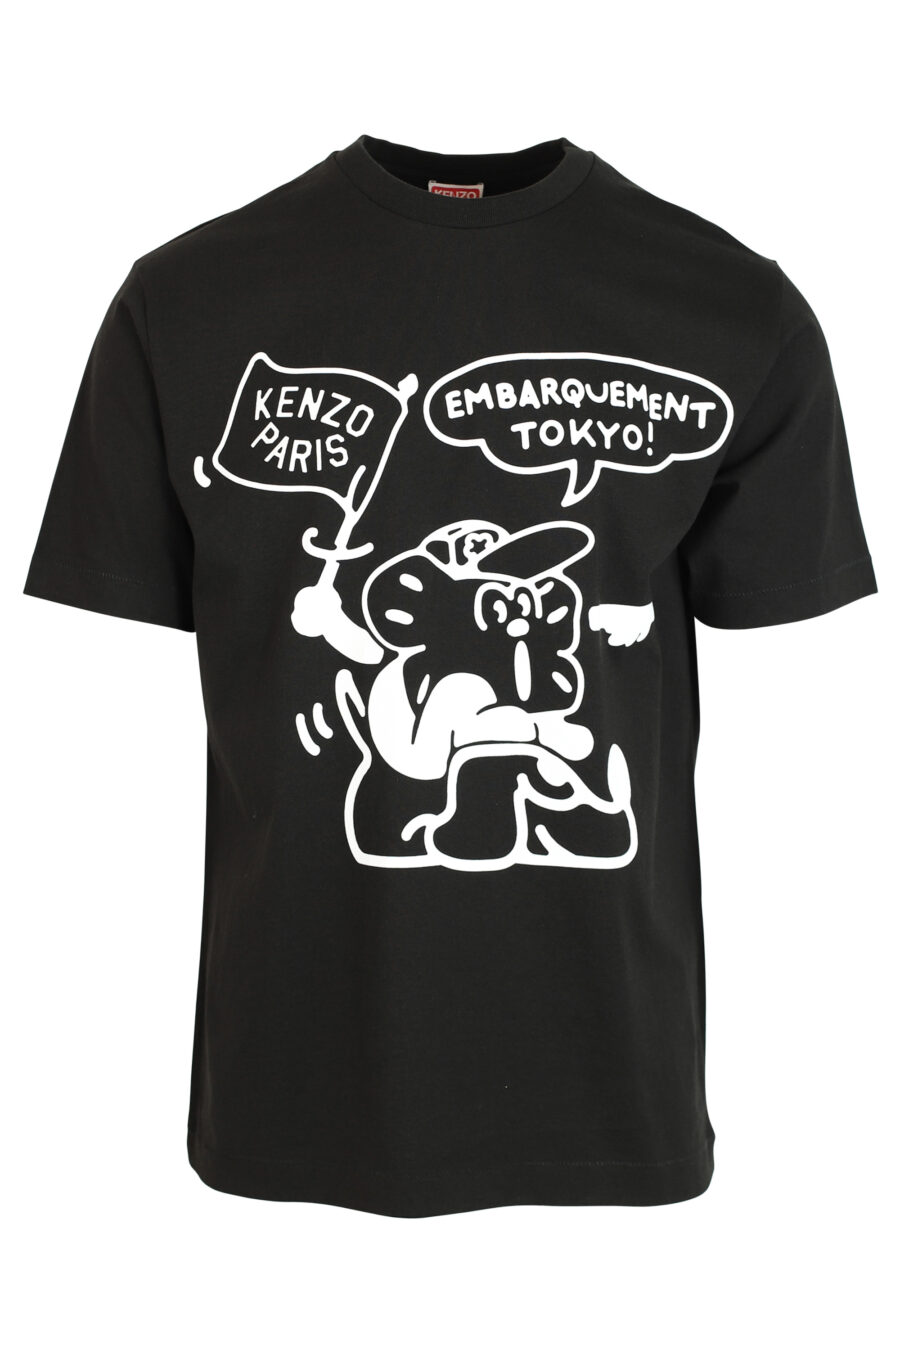 Schwarzes T-Shirt mit dem Aufdruck "boke boy travels" - 3612230465268